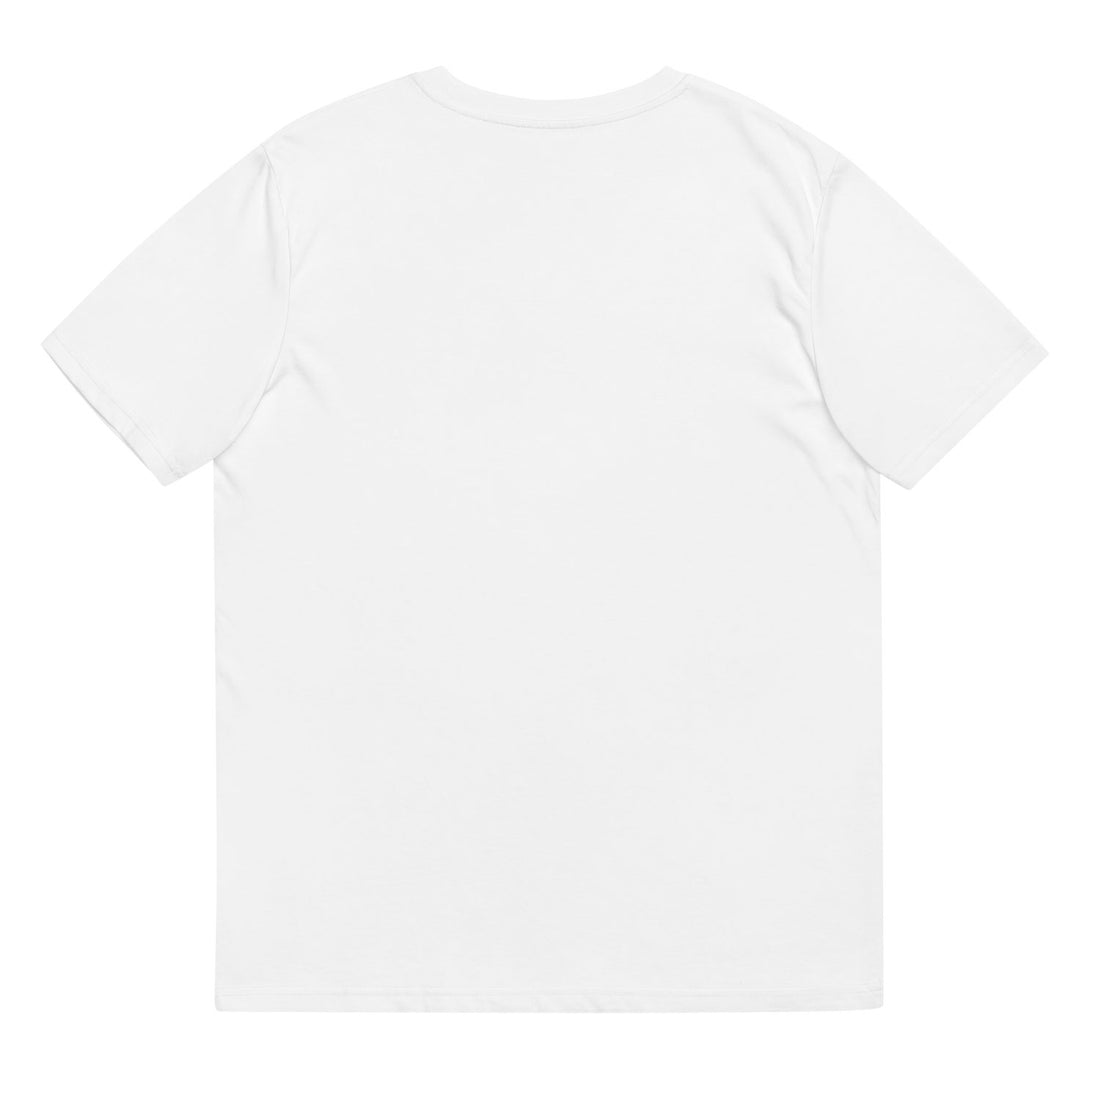 atom logo tshirt white